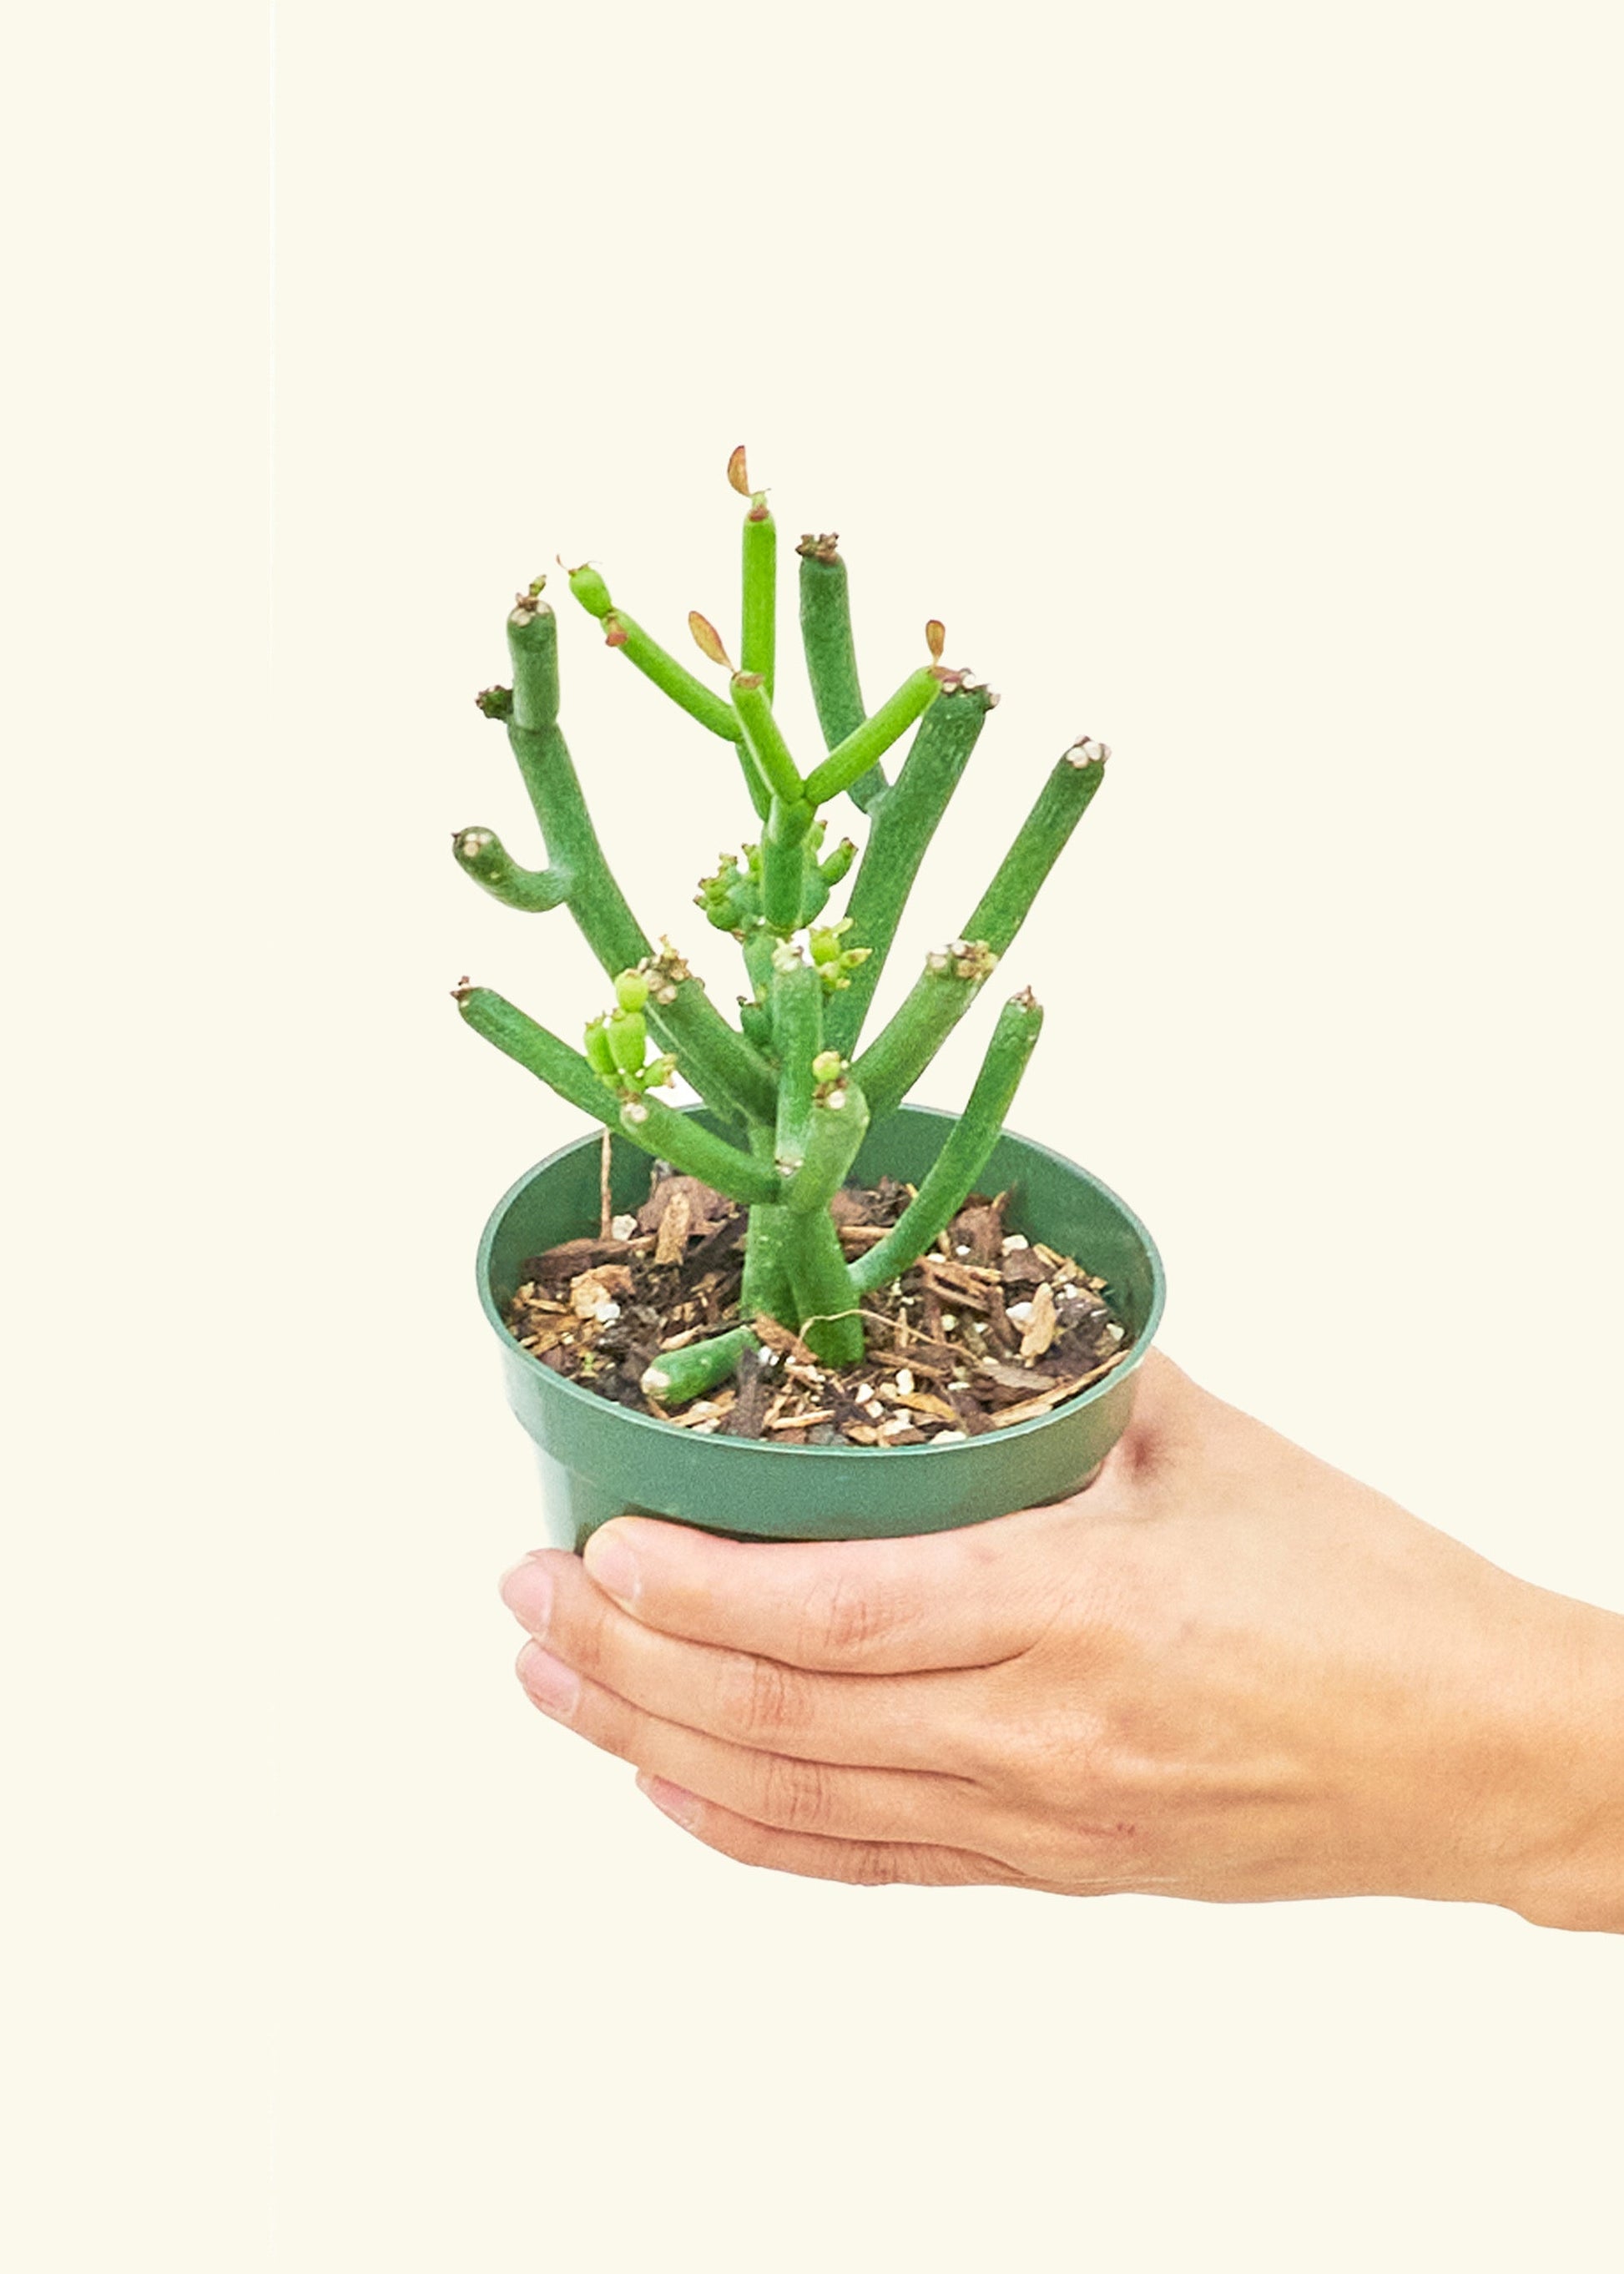 Small Pencil Cactus (Euphorbia tirucalli) in a grow pot.